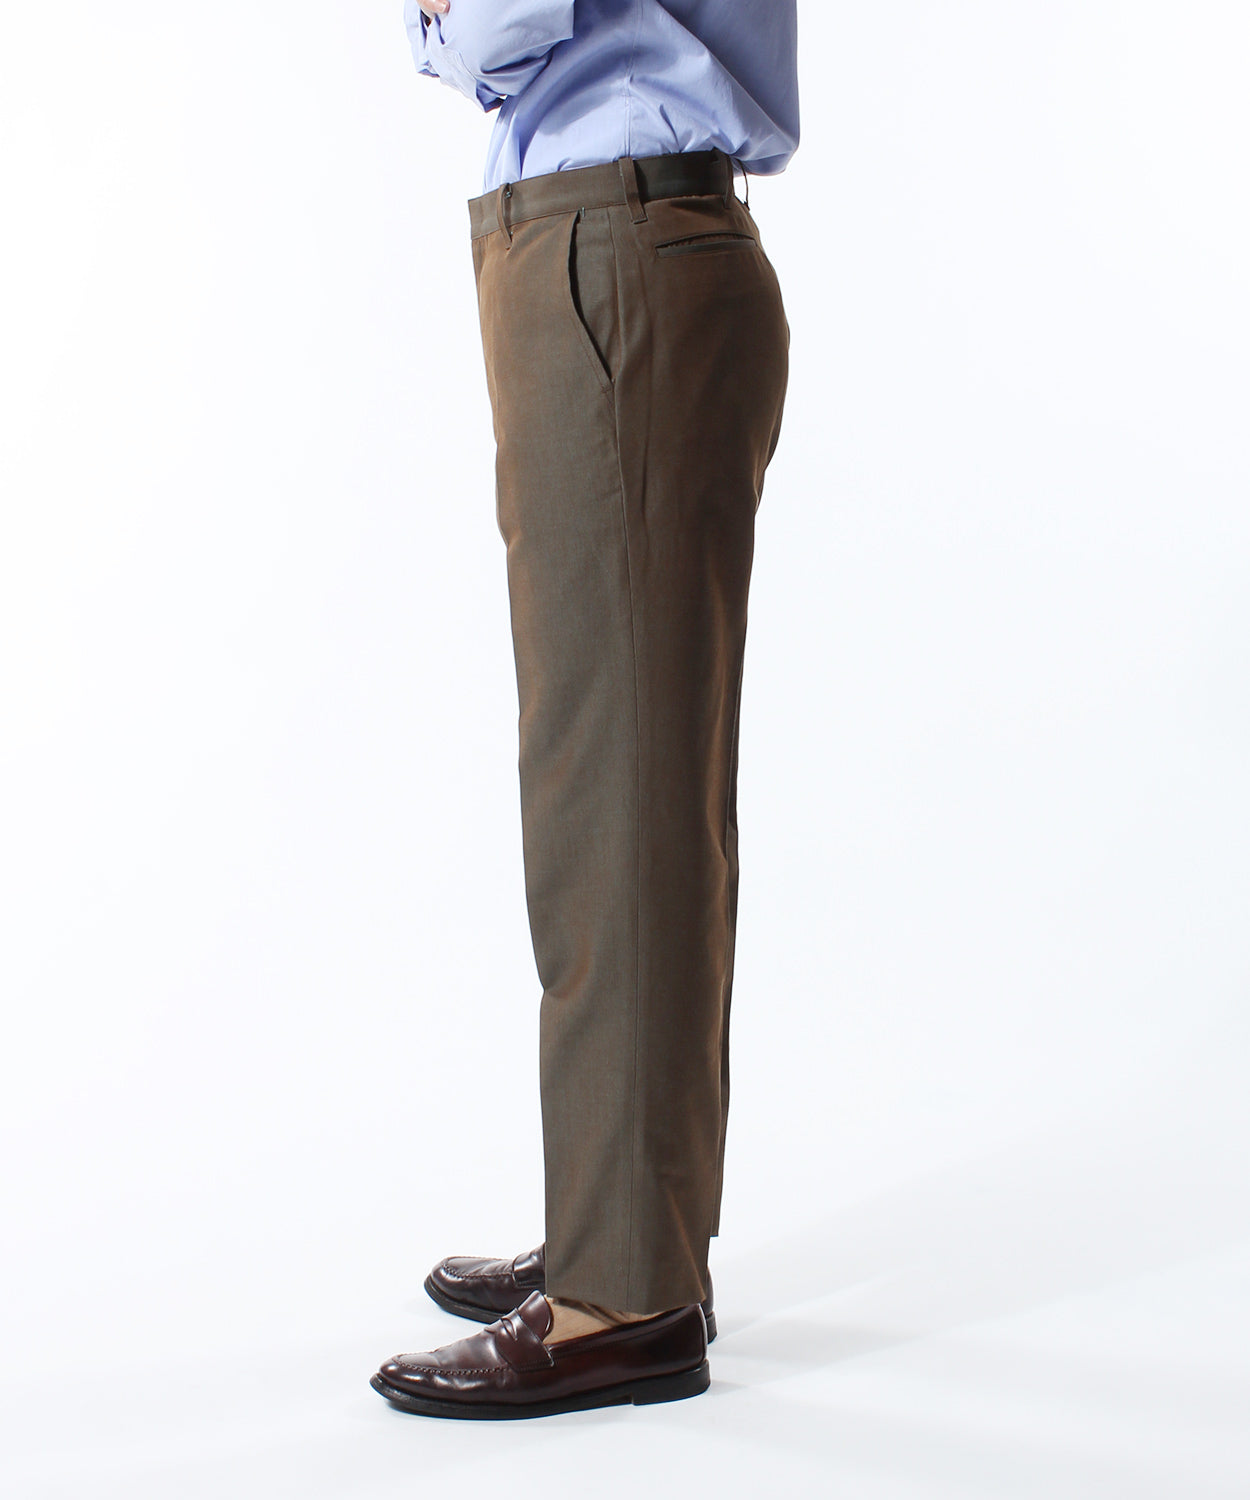 日本限定モデル】 パンツ 33 pants fit trim anatomica パンツ - www ...